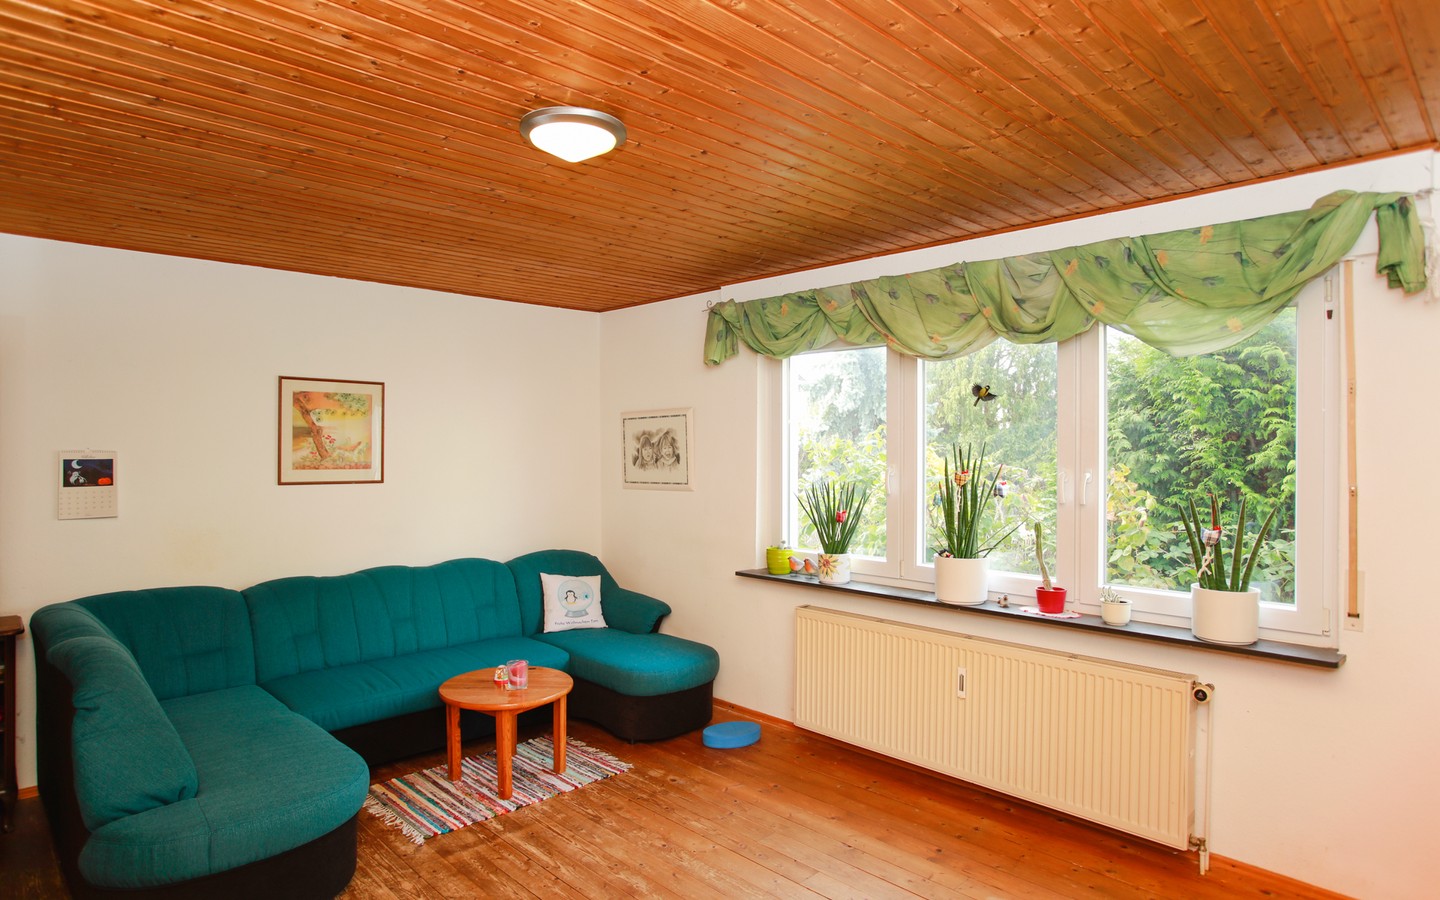 Zimmer 2 EG - Eppelheim: MFH auf großem Erbpachtgrundstück in 
familienfreundlicher Wohnlage zur flexiblen Nutzung